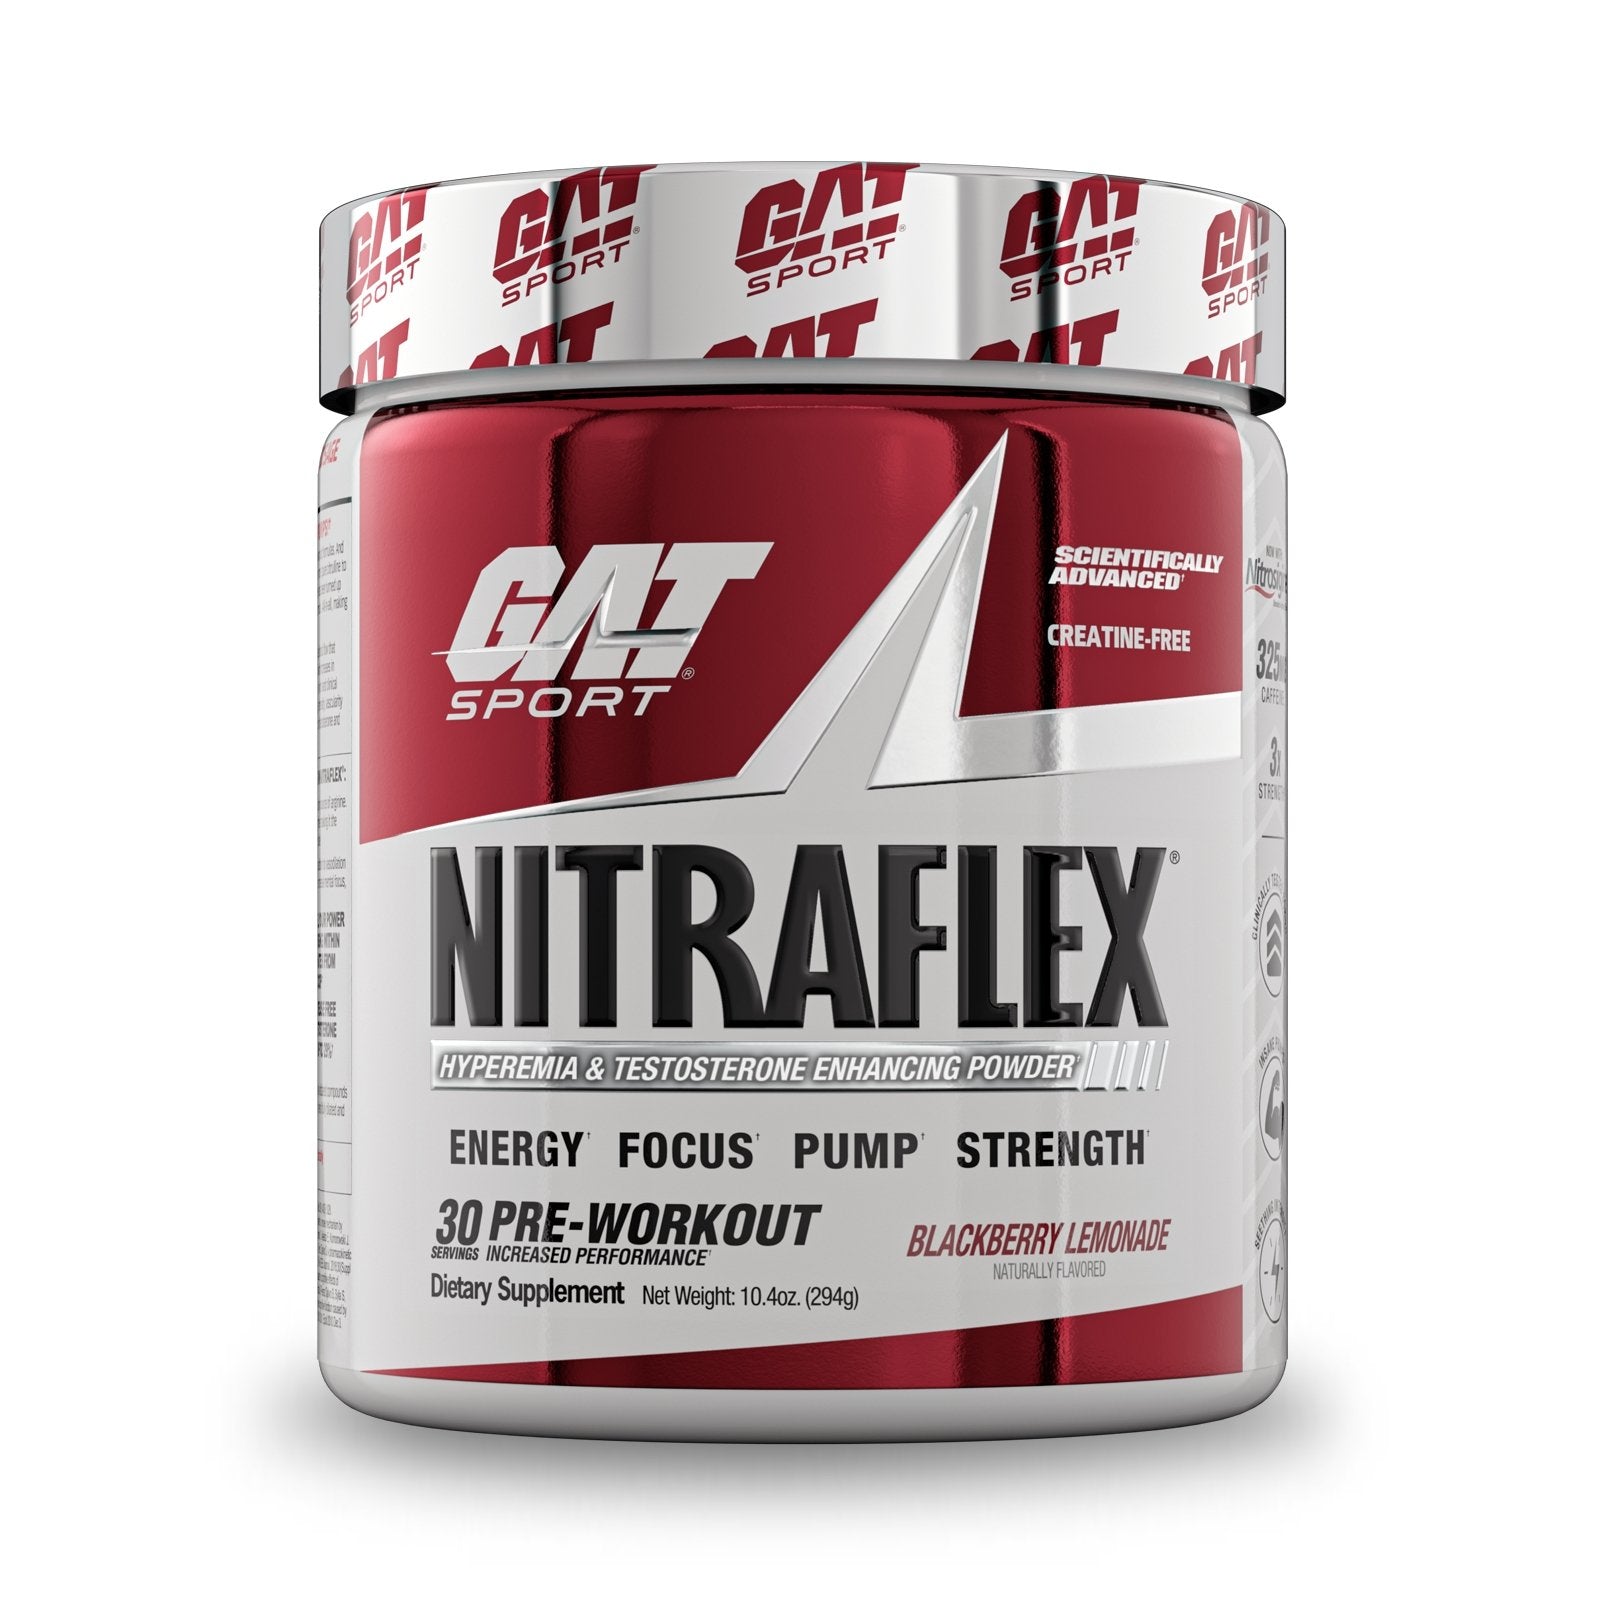 GAT NITRAFLEX 30 SERVINGS - Probodyonline